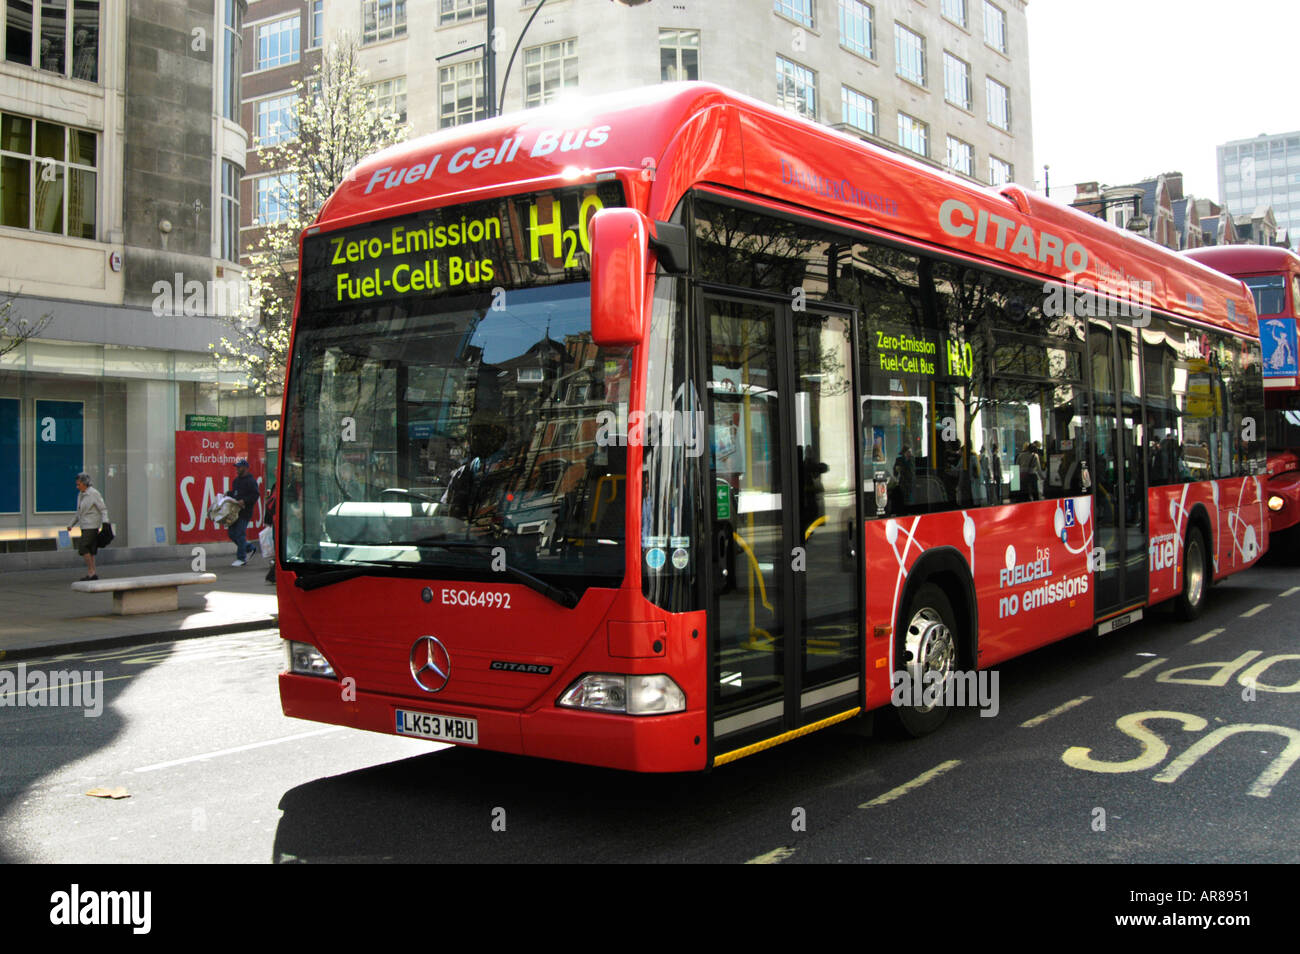 L'hydrogène zéro émission autobus à pile à combustible, London, England, UK Banque D'Images